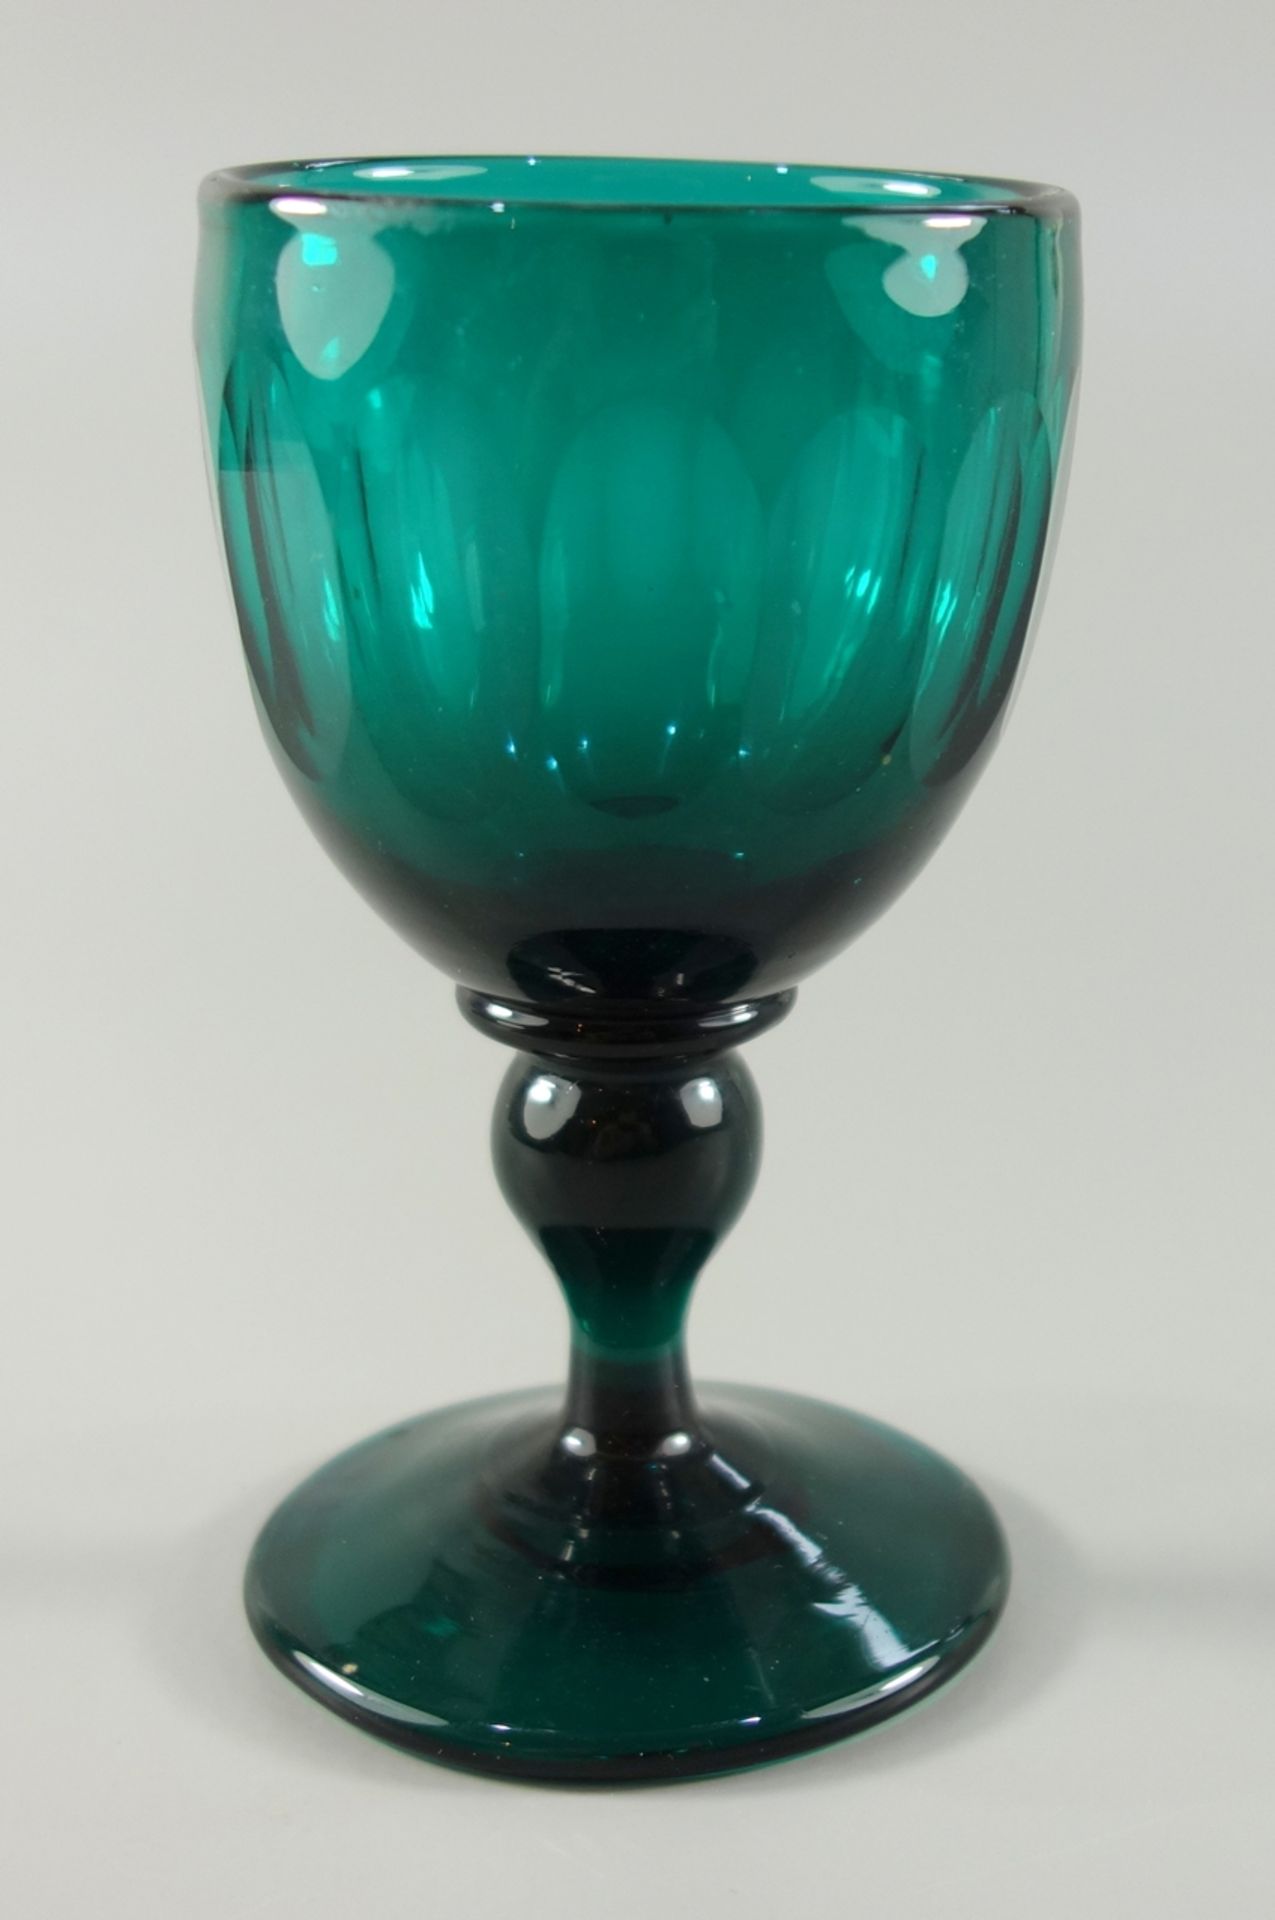 Südweinglas, um 1850, Grünglas mit ausgeschliffenem Abriss, grüne Kuppa mit Schälschliff, H.11,5cm